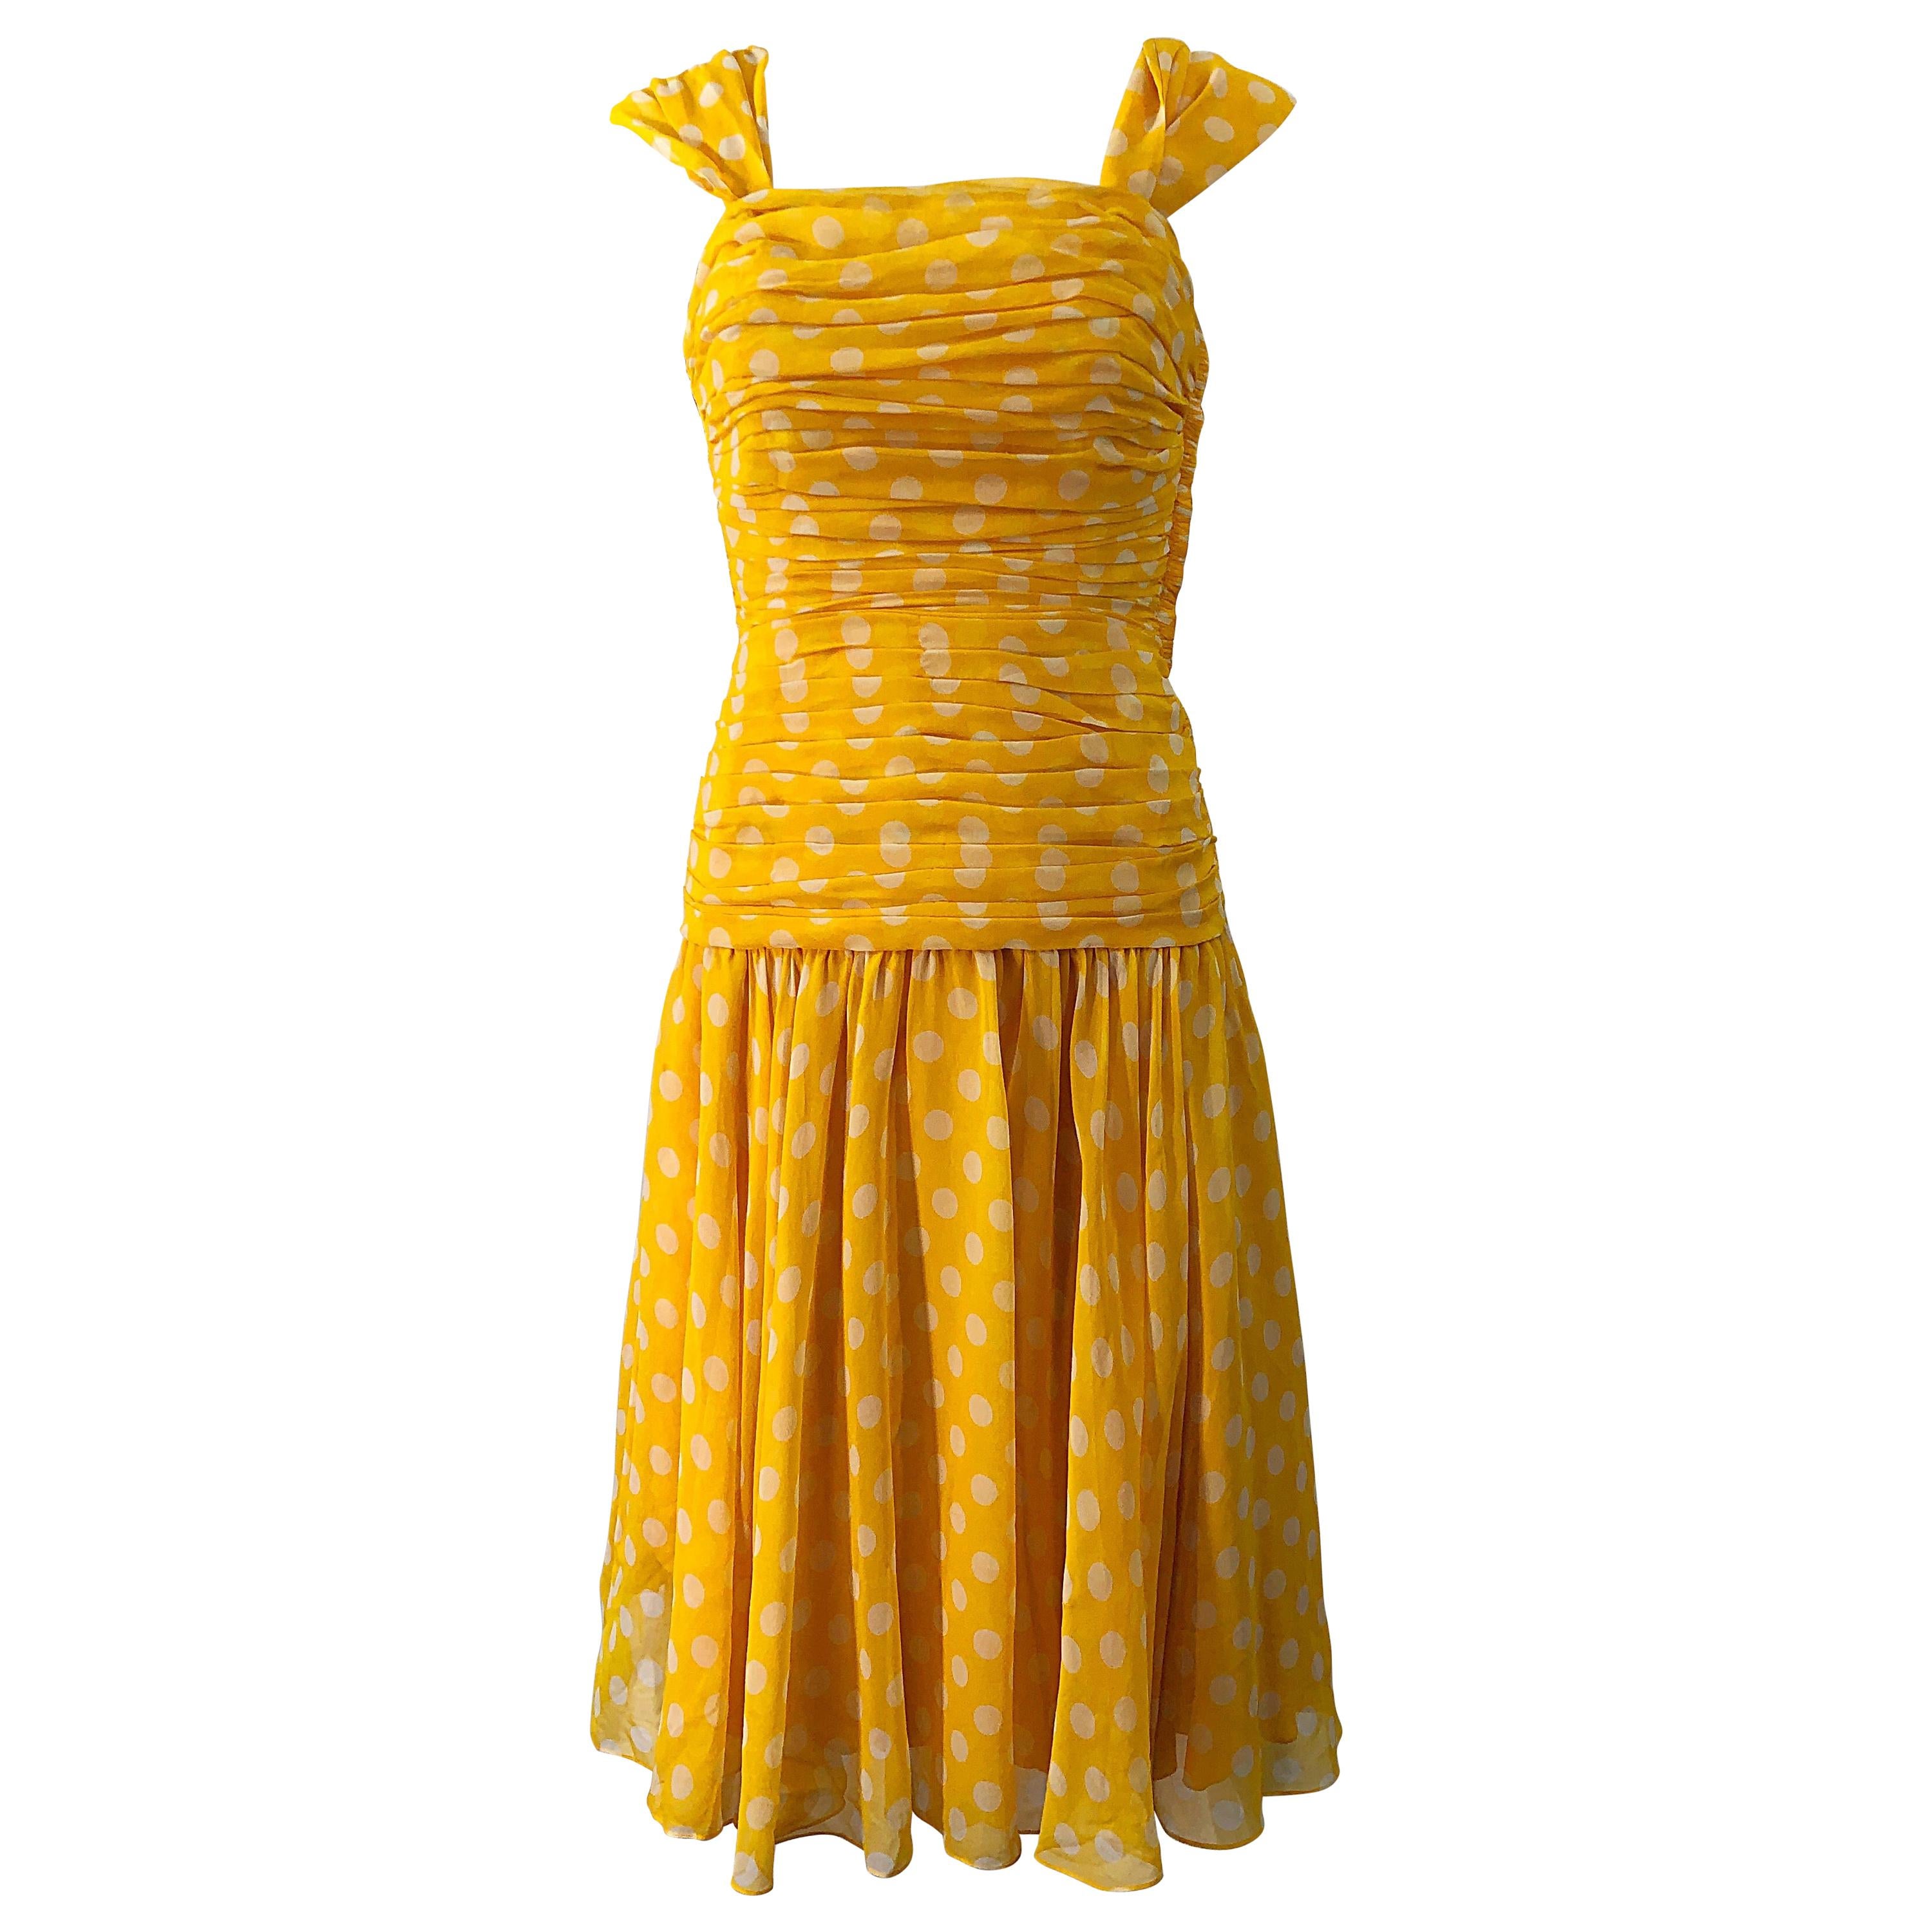 Adele Simpson 1980s Size 4 Yellow White Silk Chiffon Polka Dot Vintage 80s Dress